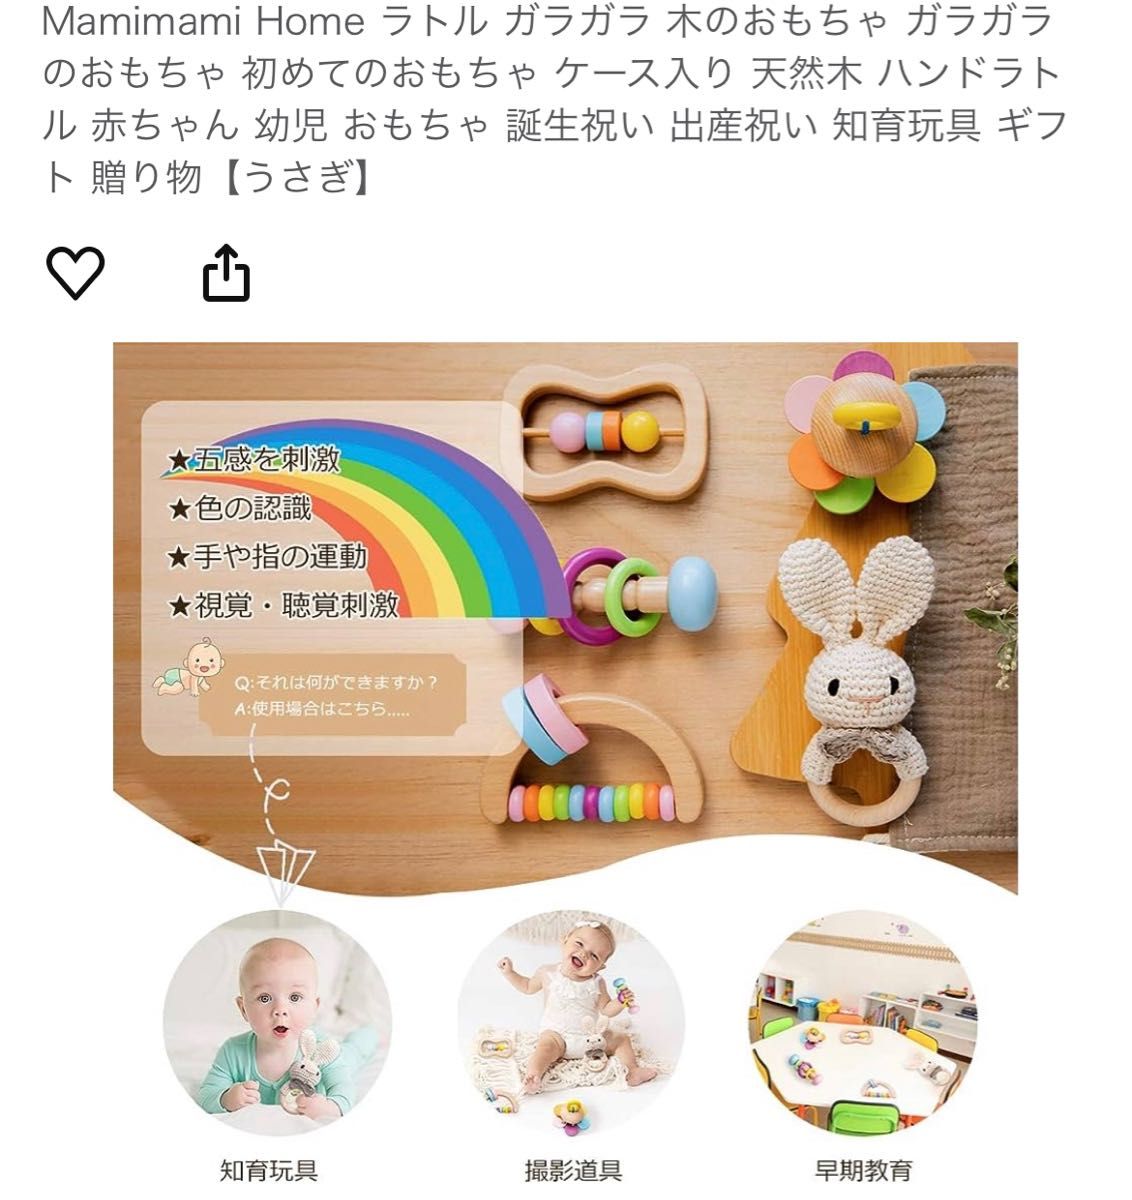 Mamimami Home 木のおもちゃ ガラガラのおもちゃ ケース入り ハンドラトル 知育玩具 ギフト 贈り物【うさぎ】